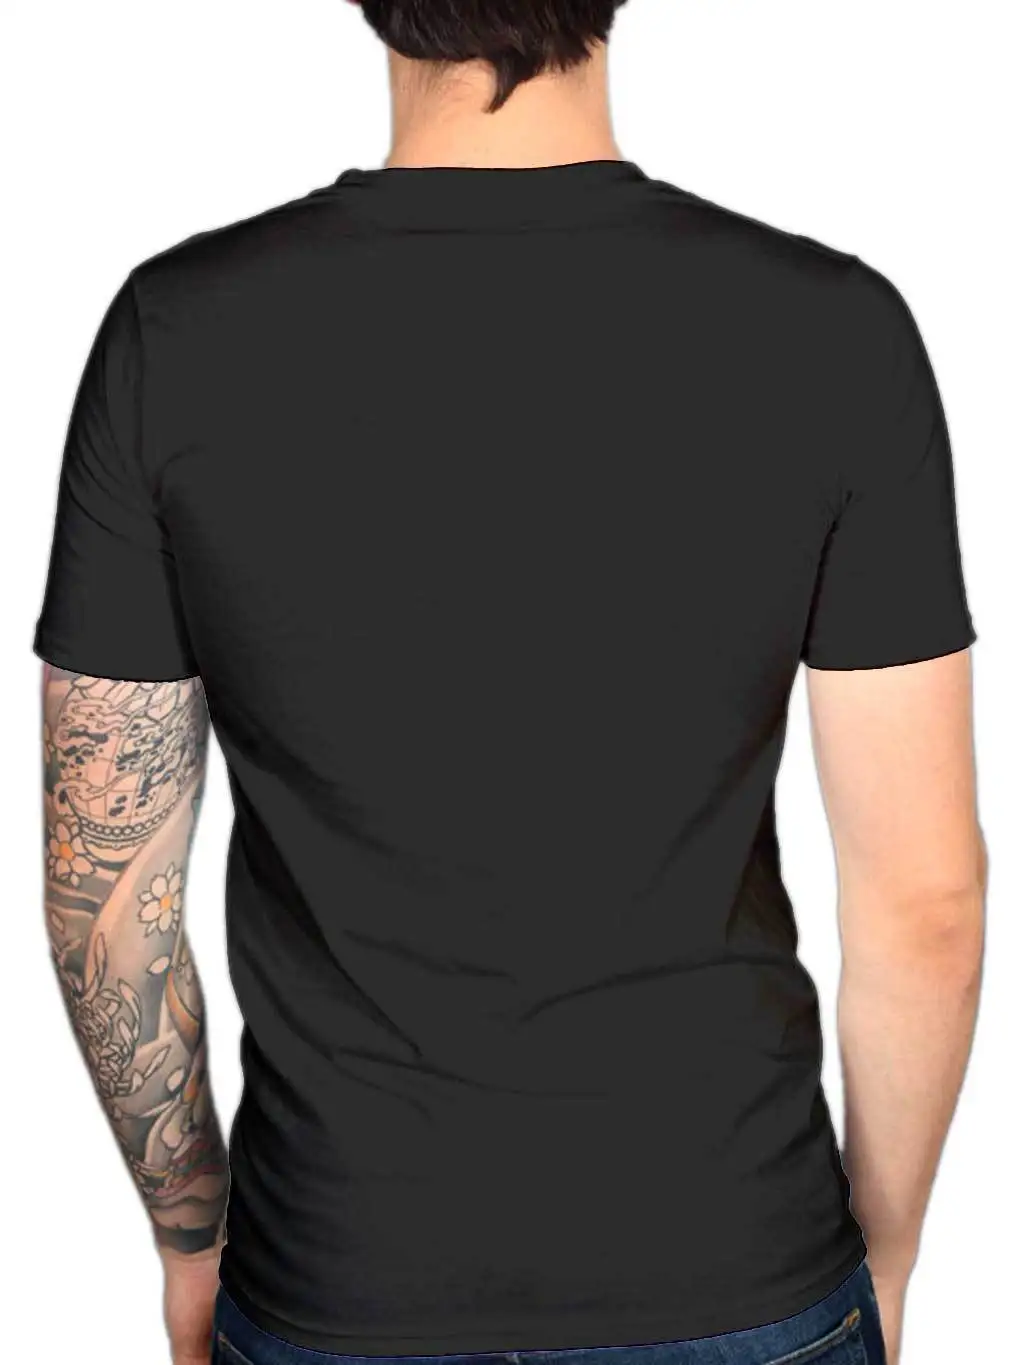 Vampyras Dienoraščiai Damon Salvatore KARTAIS Licenciją Adult T-Shirt Visų Dydžių Cool Atsitiktinis pasididžiavimas marškinėliai vyrams Mados marškinėlius